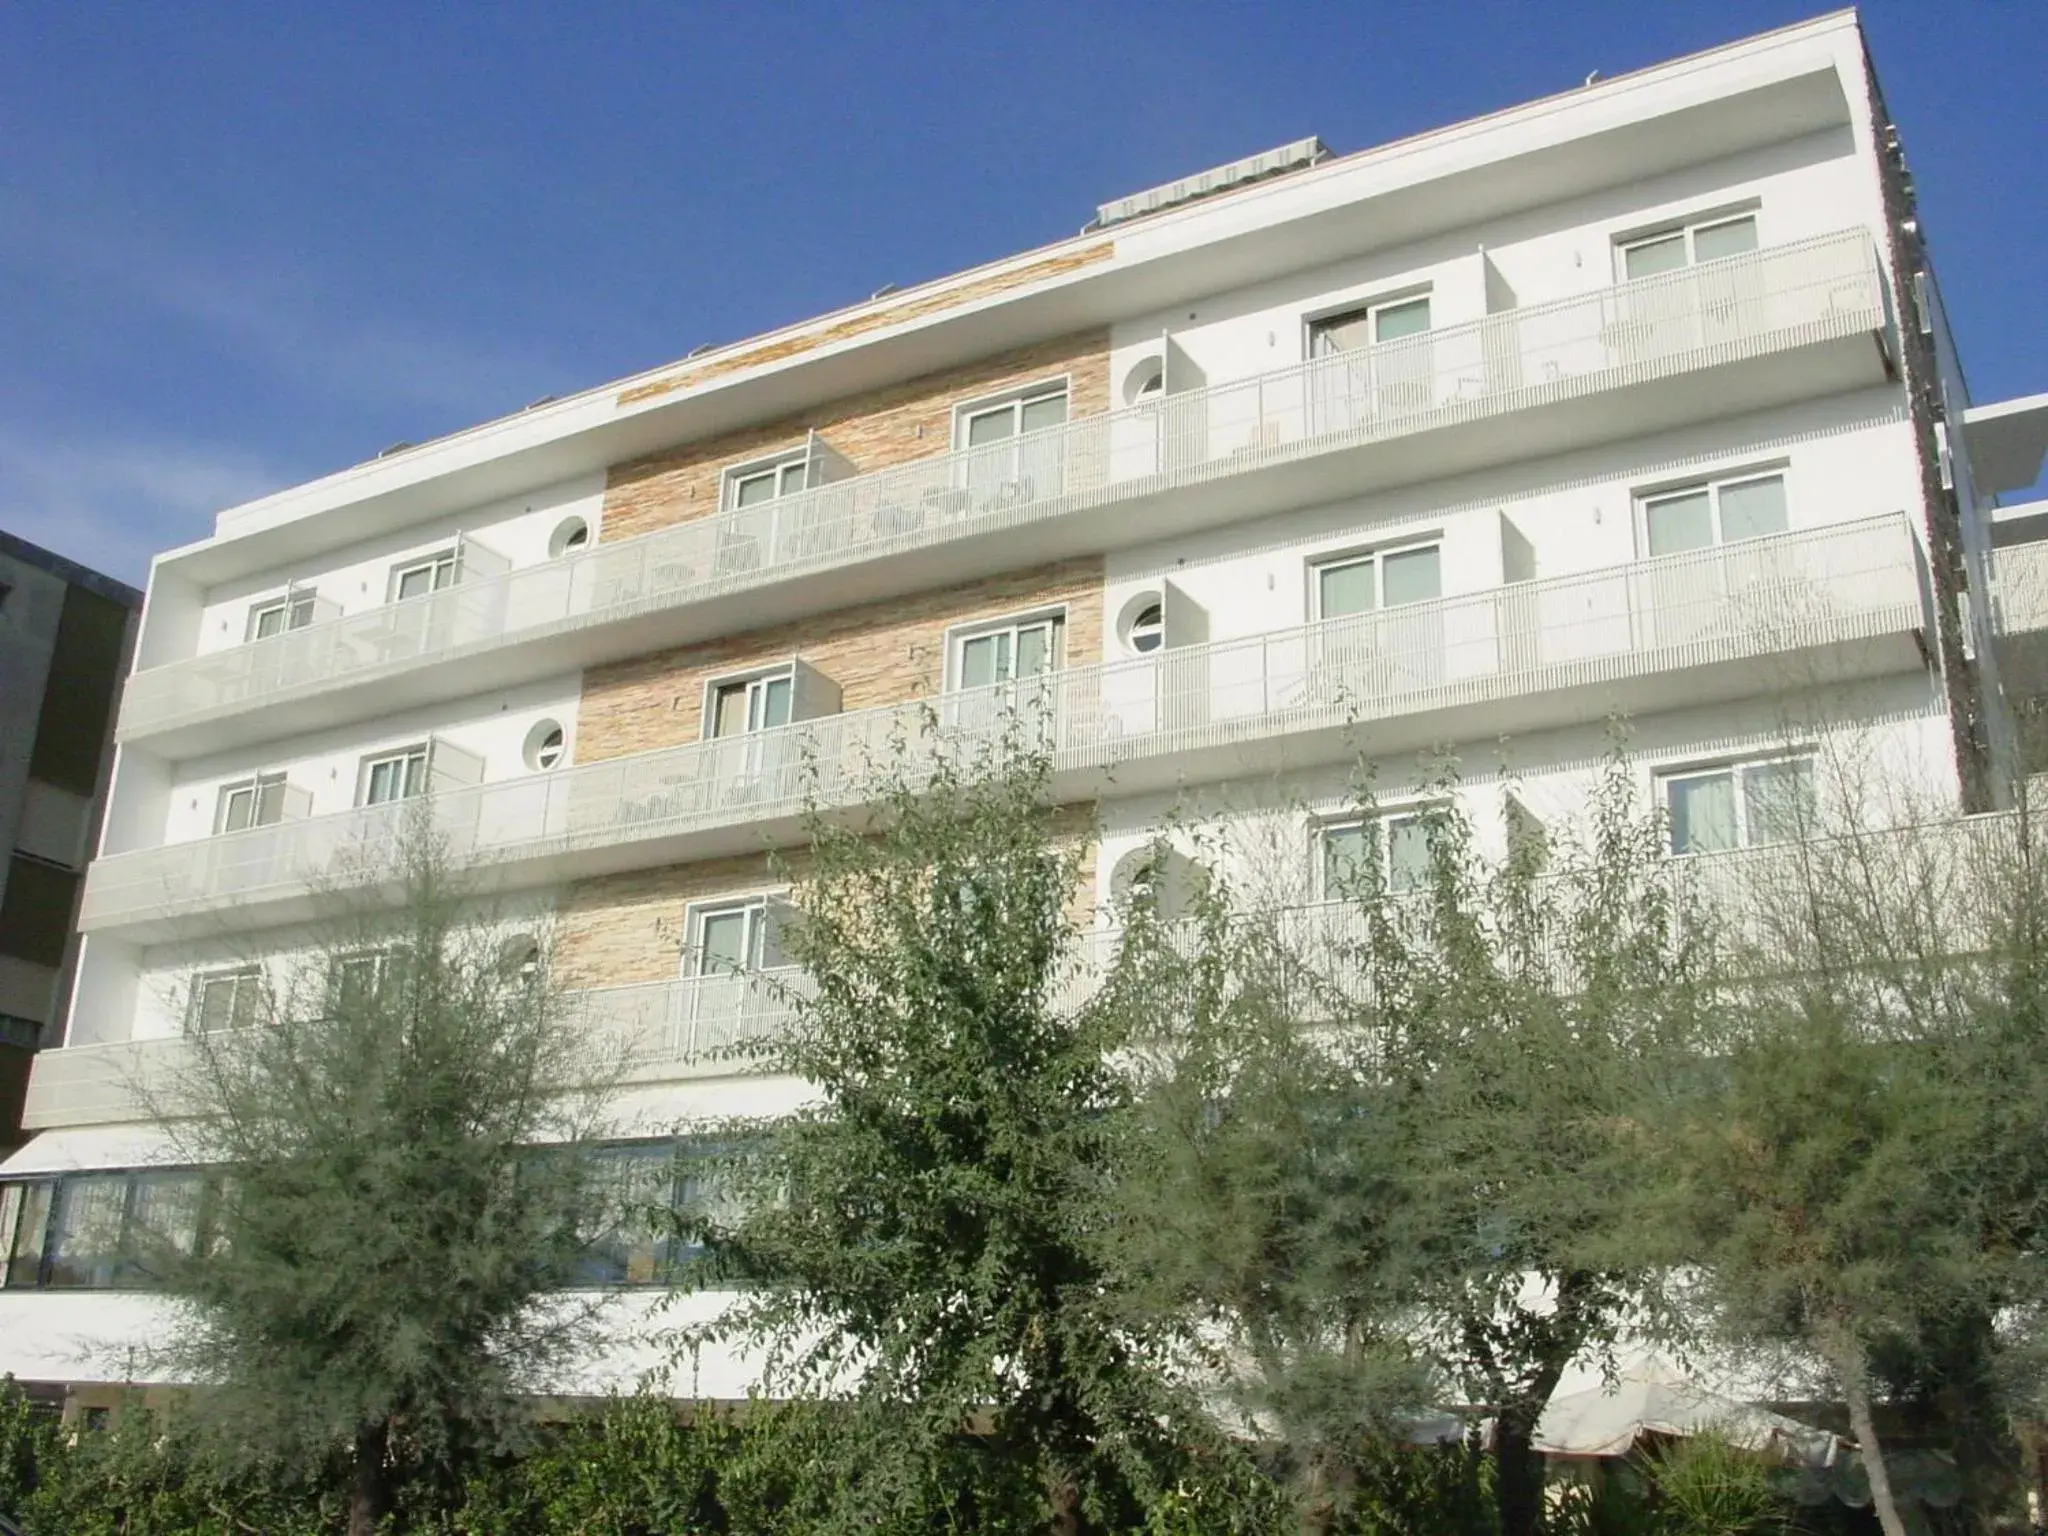 Facade/entrance, Property Building in Hotel Granada